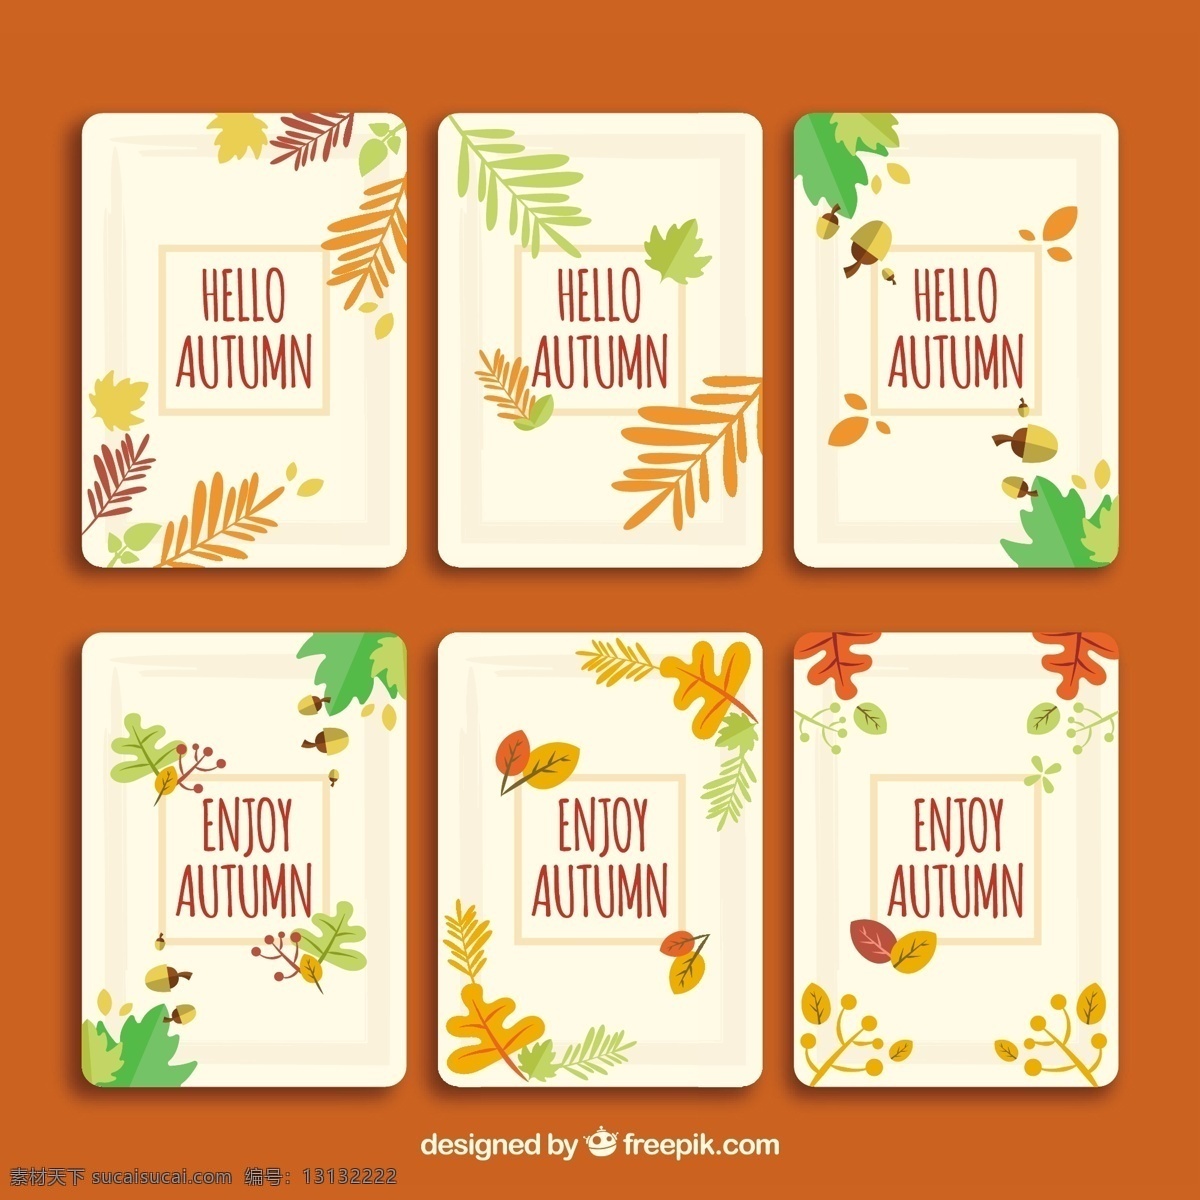 原始 秋季 卡片 集 模板 树叶 自然 可爱 秋天 五颜六色 平 现代 平面设计 有趣 凉爽 树枝 秋叶 季节